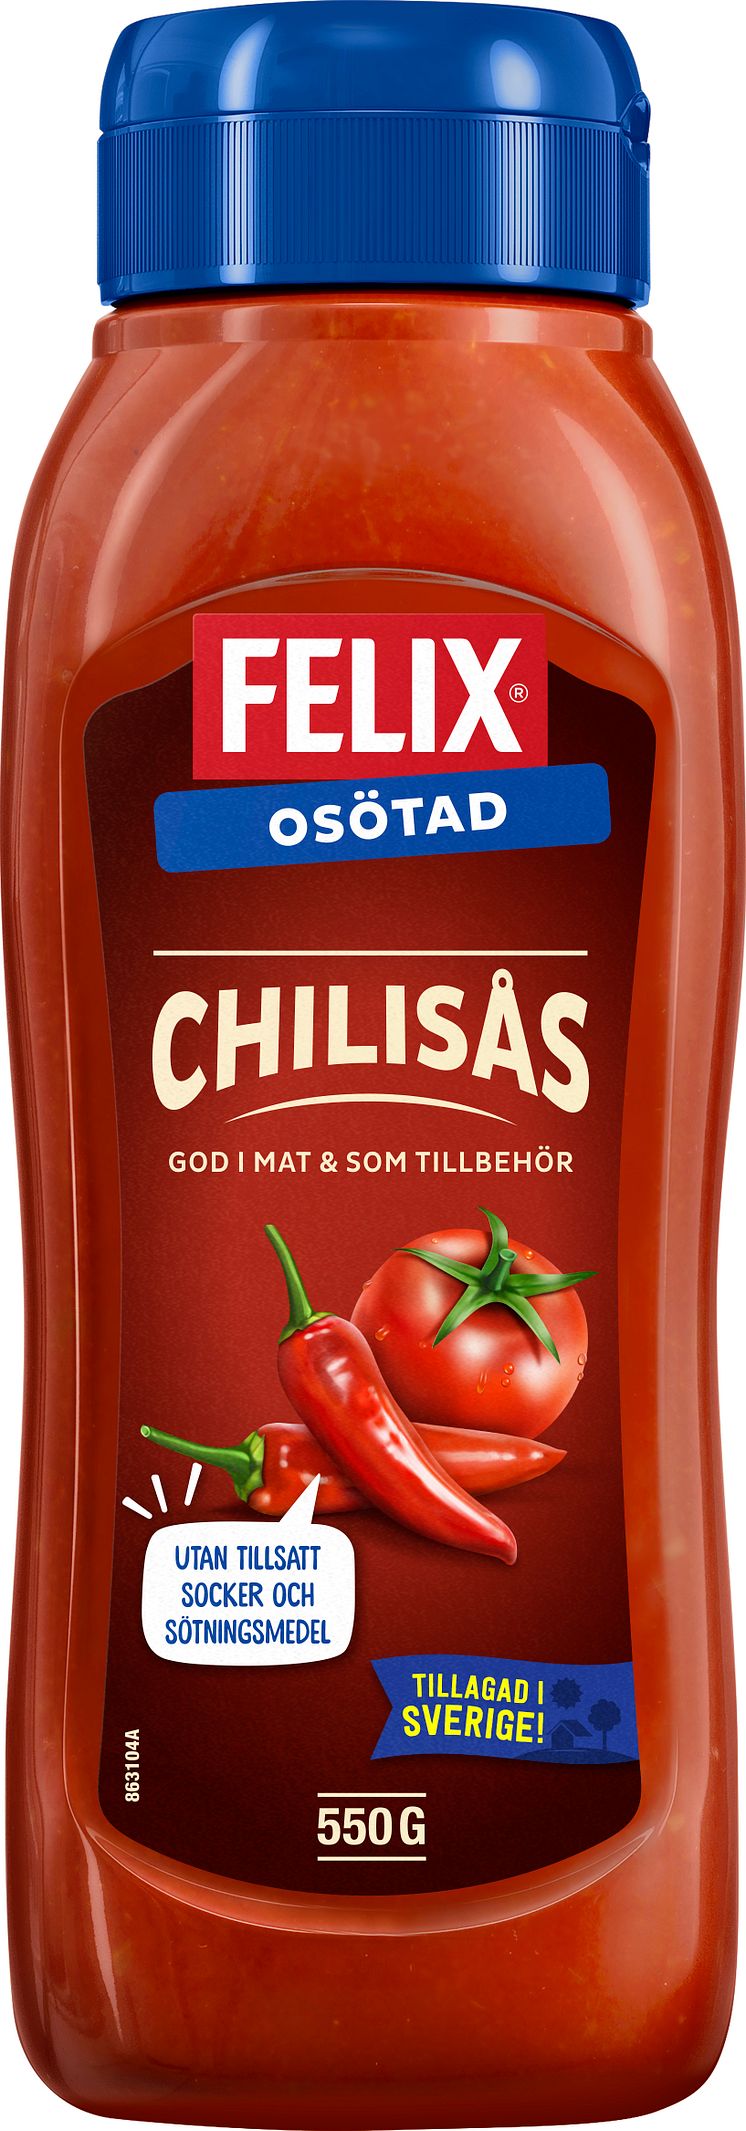 Felix Osötad Chilisås